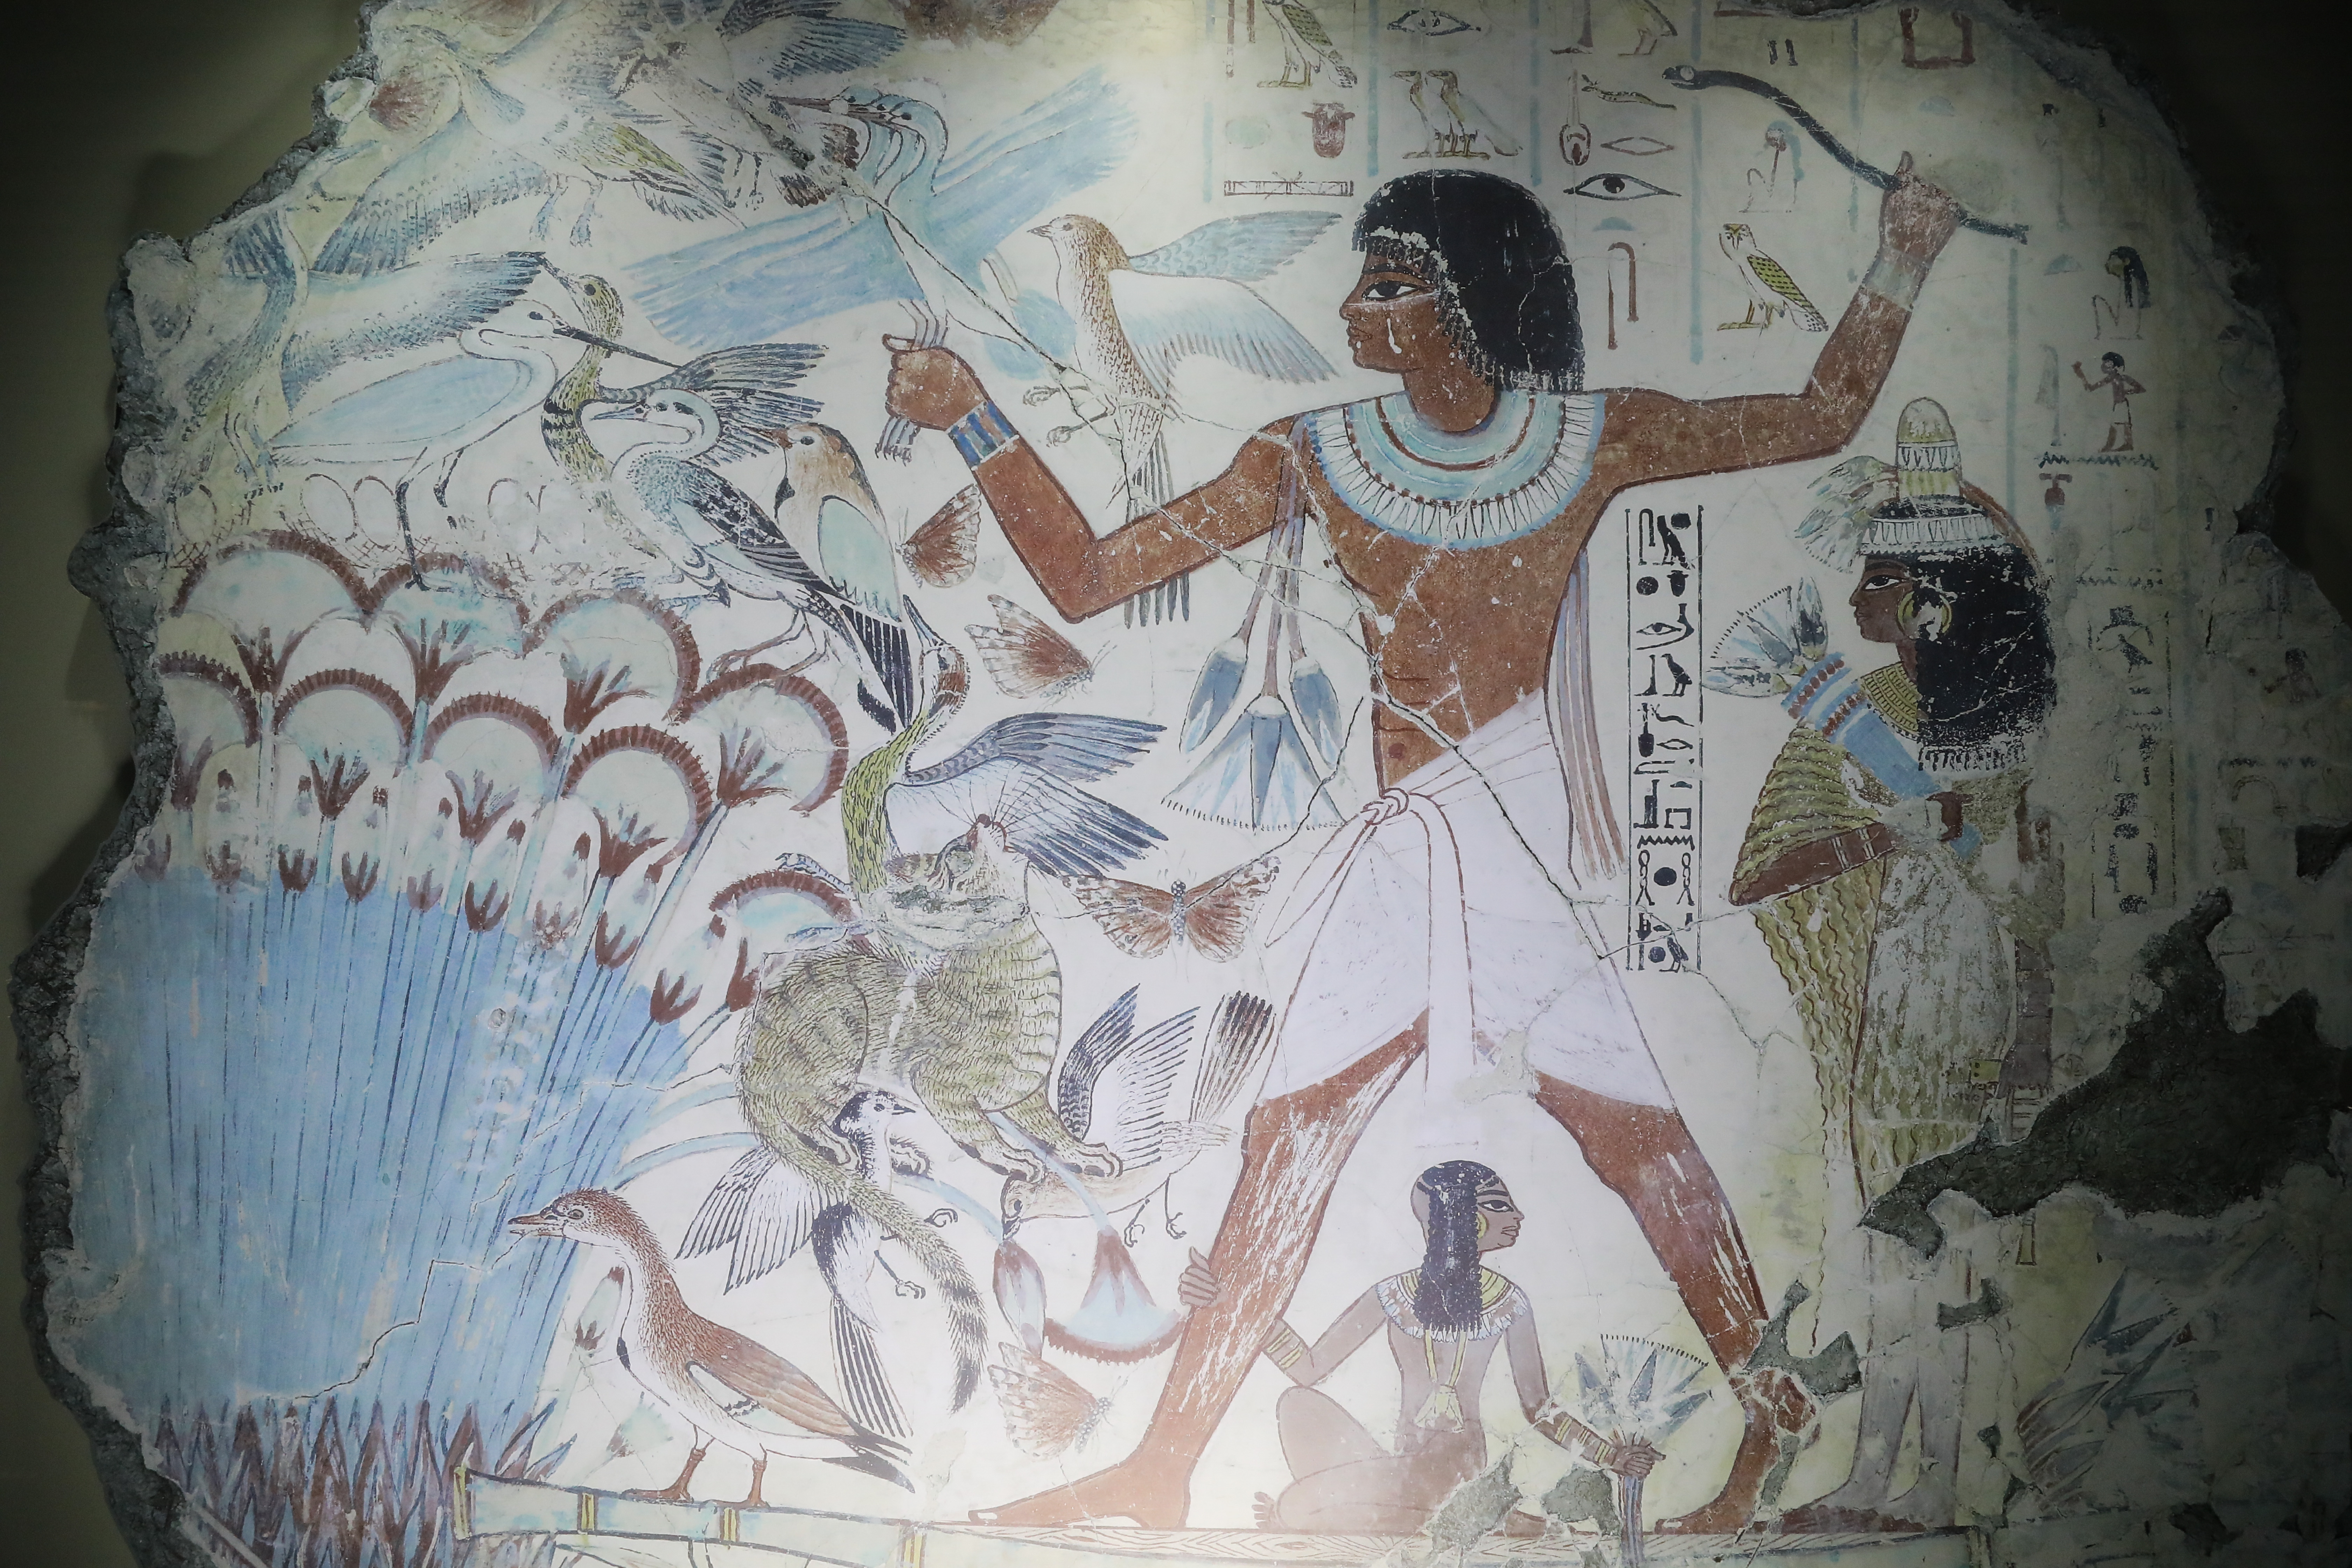 Nebamun, az egyiptomi írnok és gabonakönyvelő (i.e. kb. 1350) madárra vadászik a Nílus környéki mocsarakban. Nebamun gazdagon díszített sírját a 19. században fedezték fel.